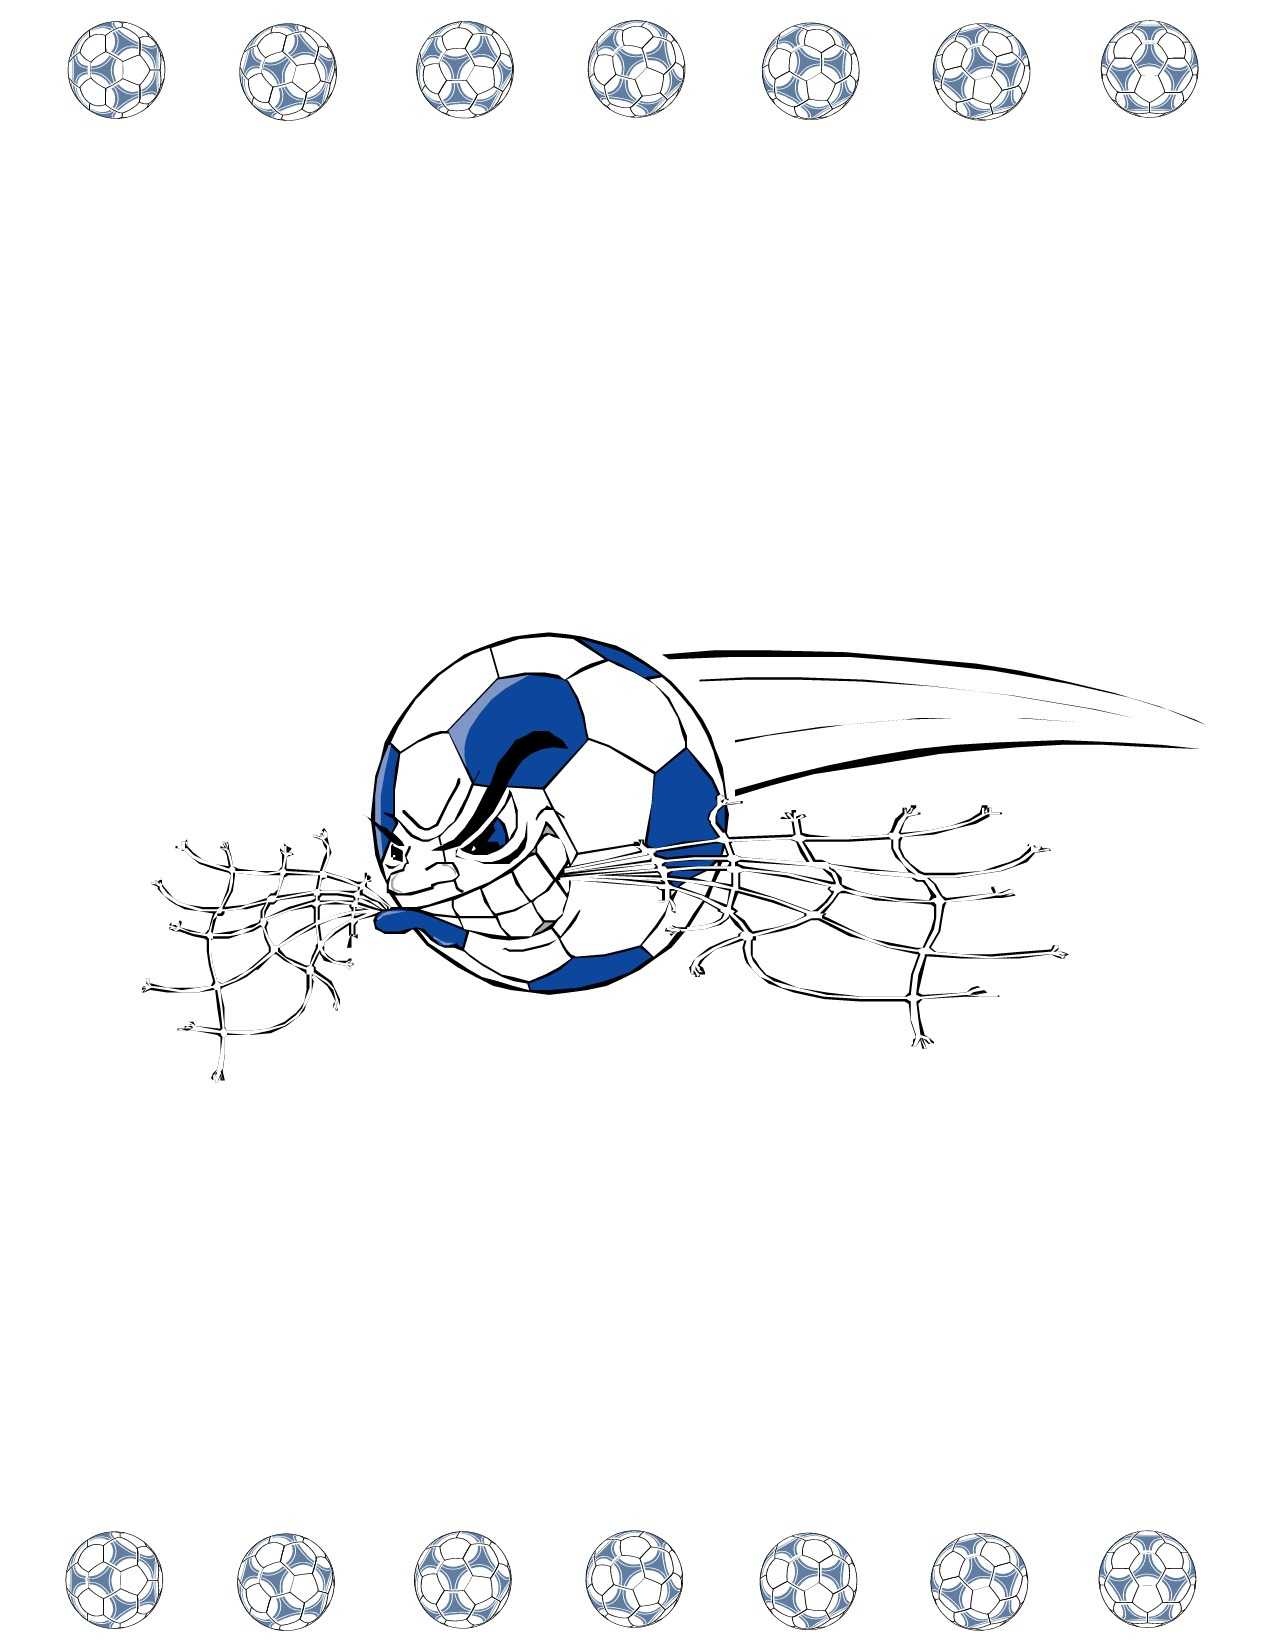 Soccer Award Certificate Maker: Make Personalized Soccer Awards Pertaining To Soccer Award Certificate Template